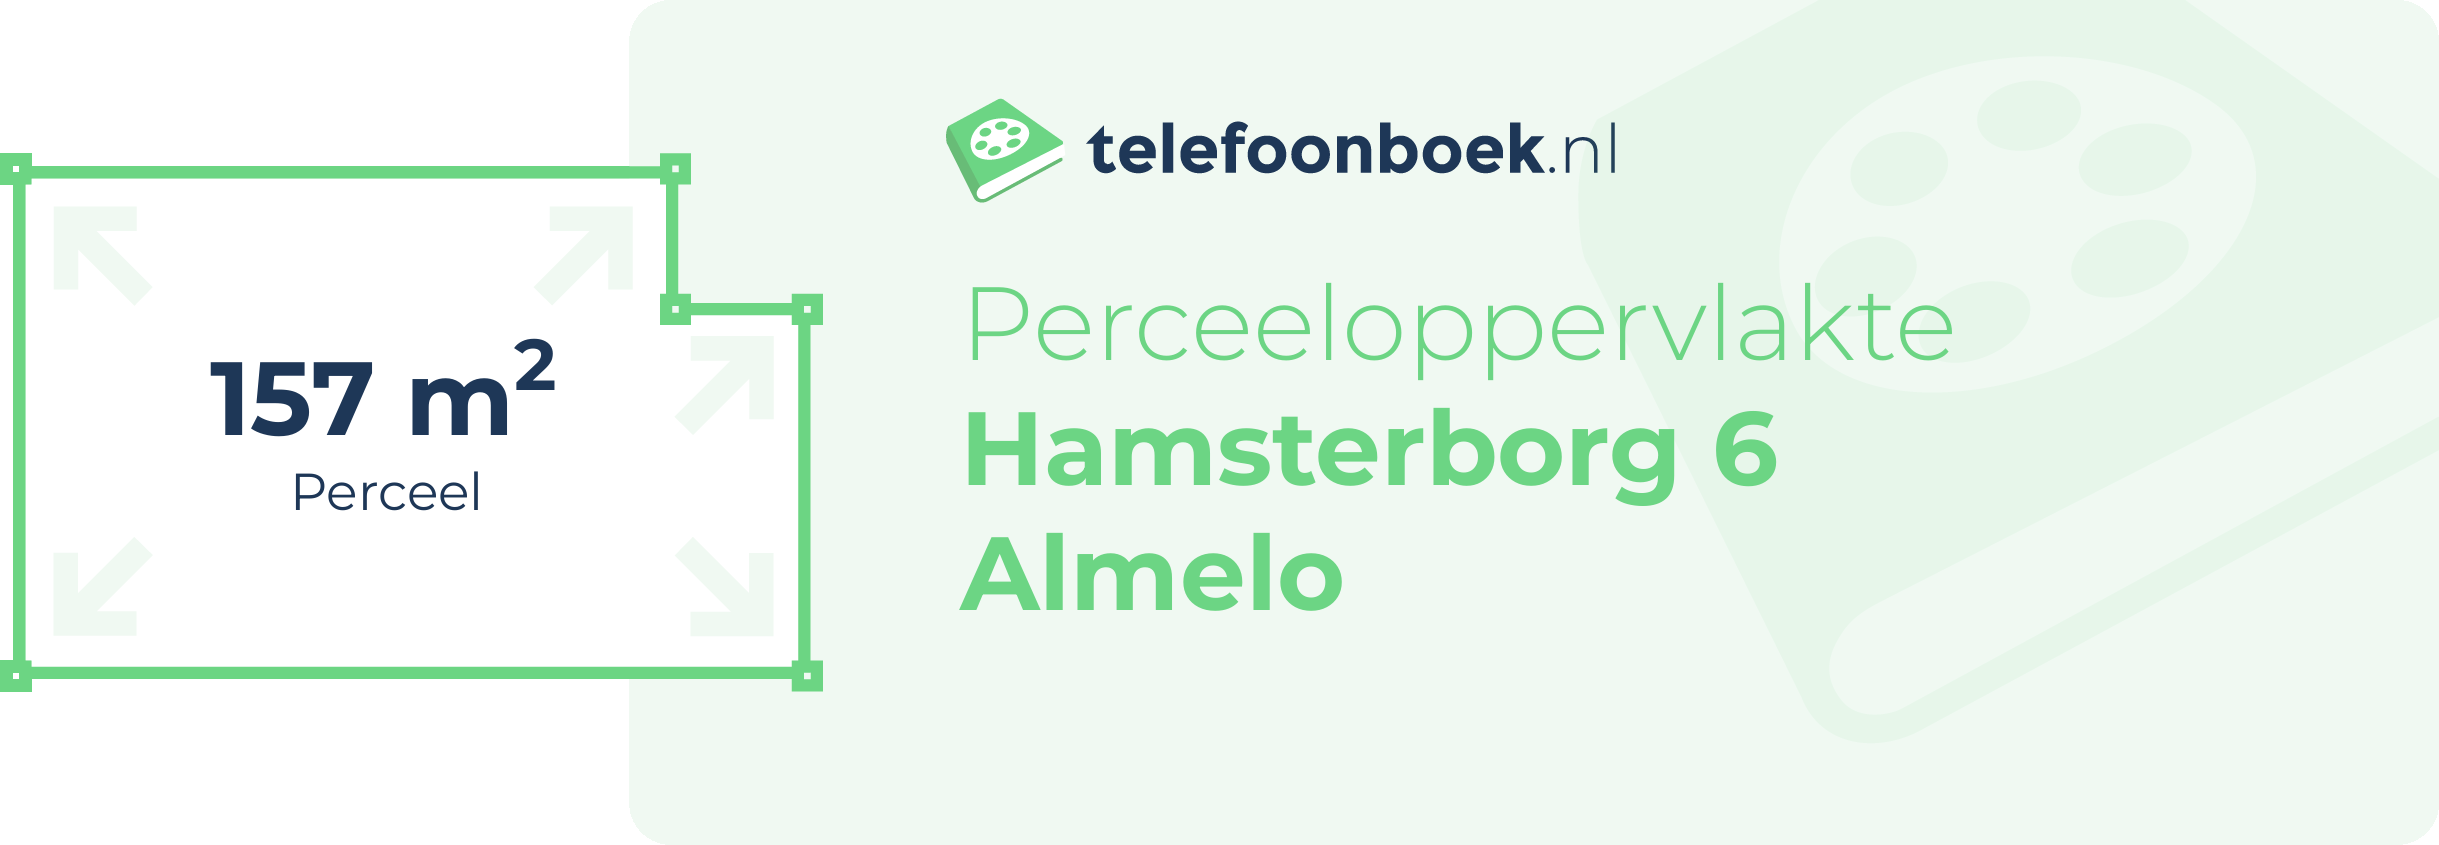 Perceeloppervlakte Hamsterborg 6 Almelo